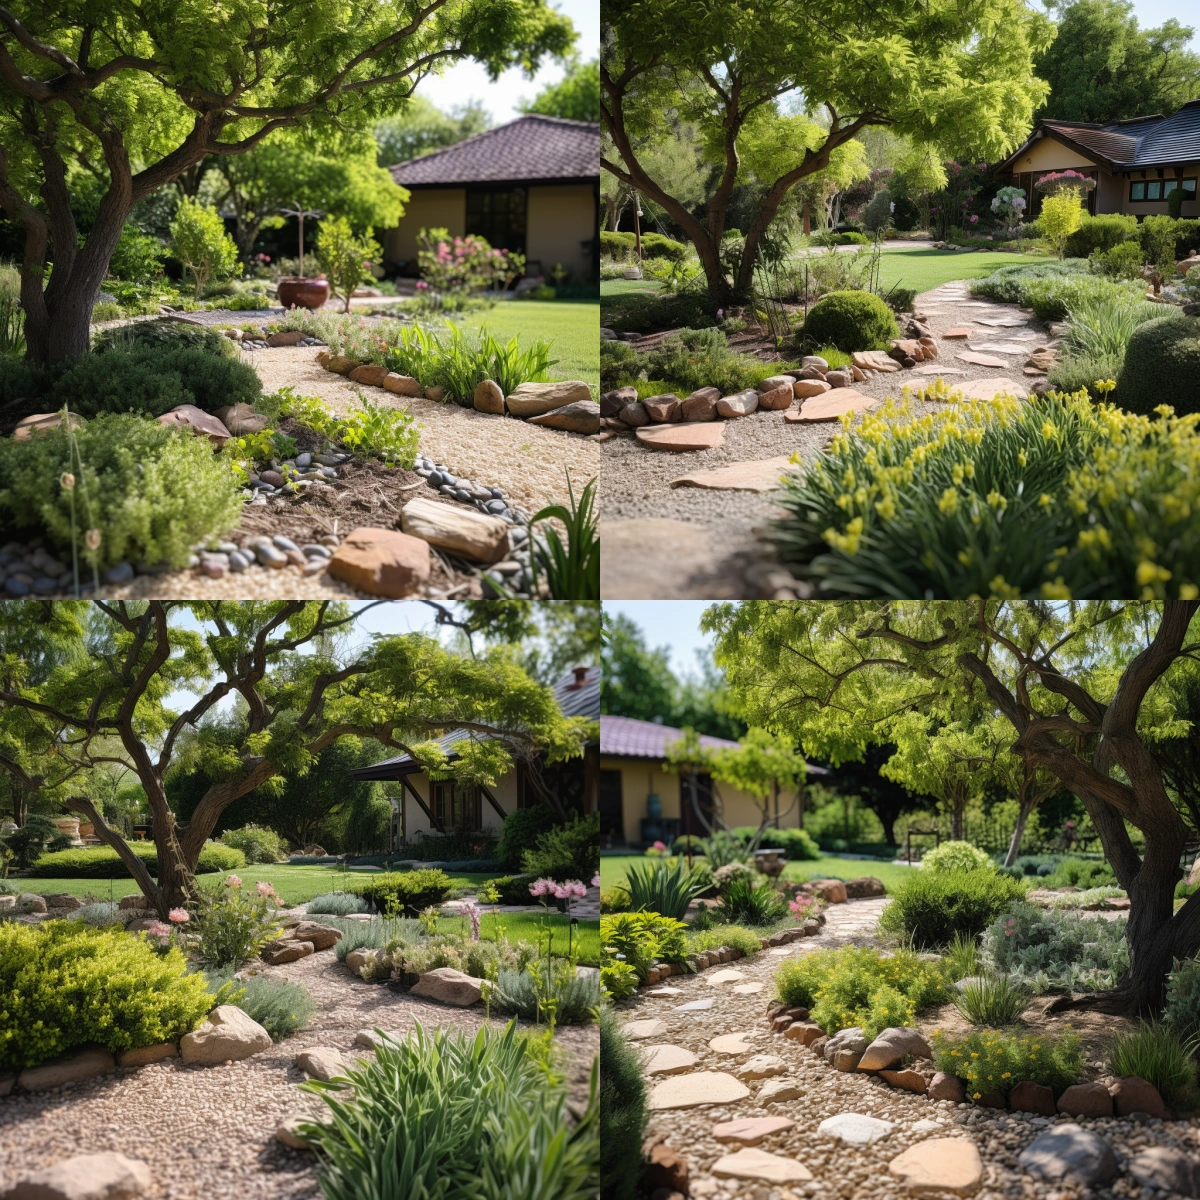 exemples decoration exterieure jardin cailloux bordures pierres ombre arbre